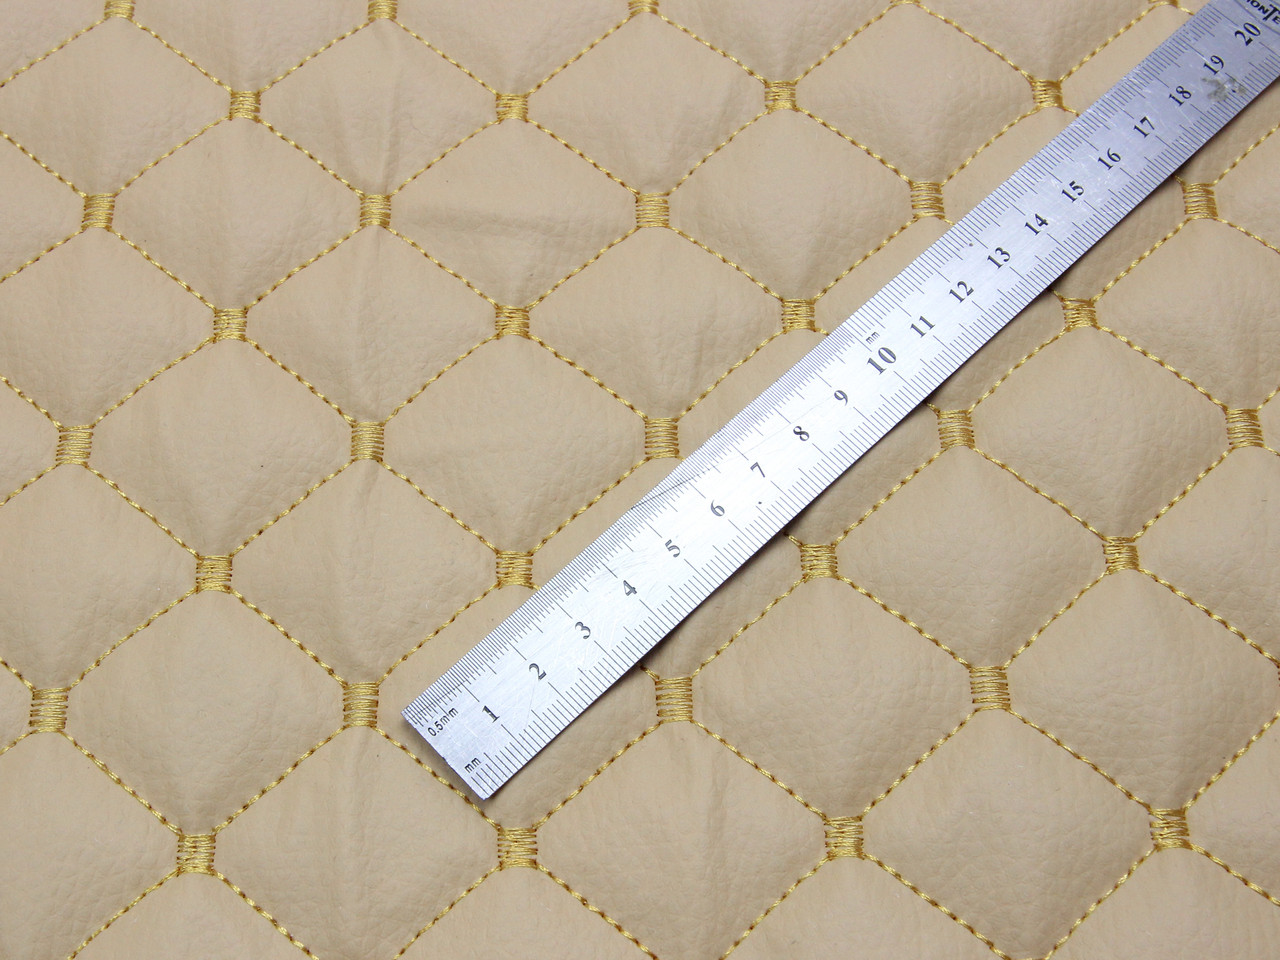 Кожзам стёганый бежевый «Ромб» (прошитый золотой нитью) дублированный синтепоном и флизелином, ширина 1,35м детальная фотка